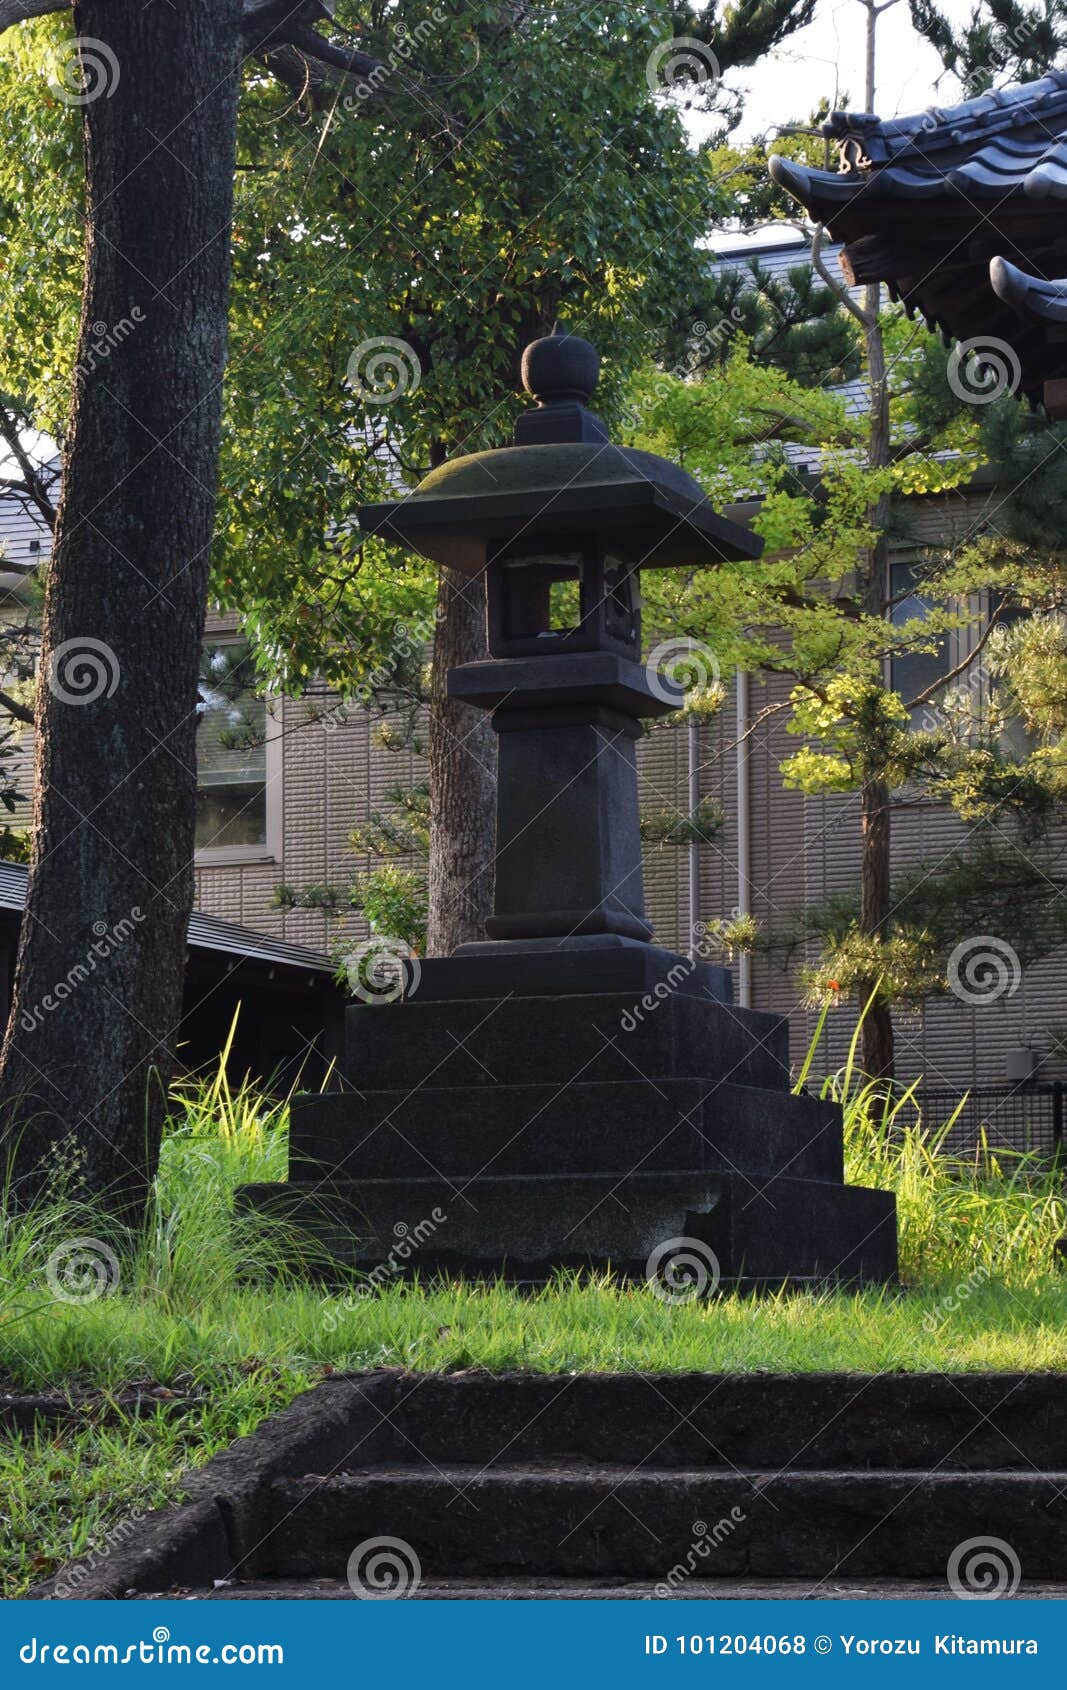 Ein kleiner shintoistischer Schrein. Japaner besuchen häufig shintoistischen Schrein, um zur Hauptsicherheit und zu den Wünschen zu beten